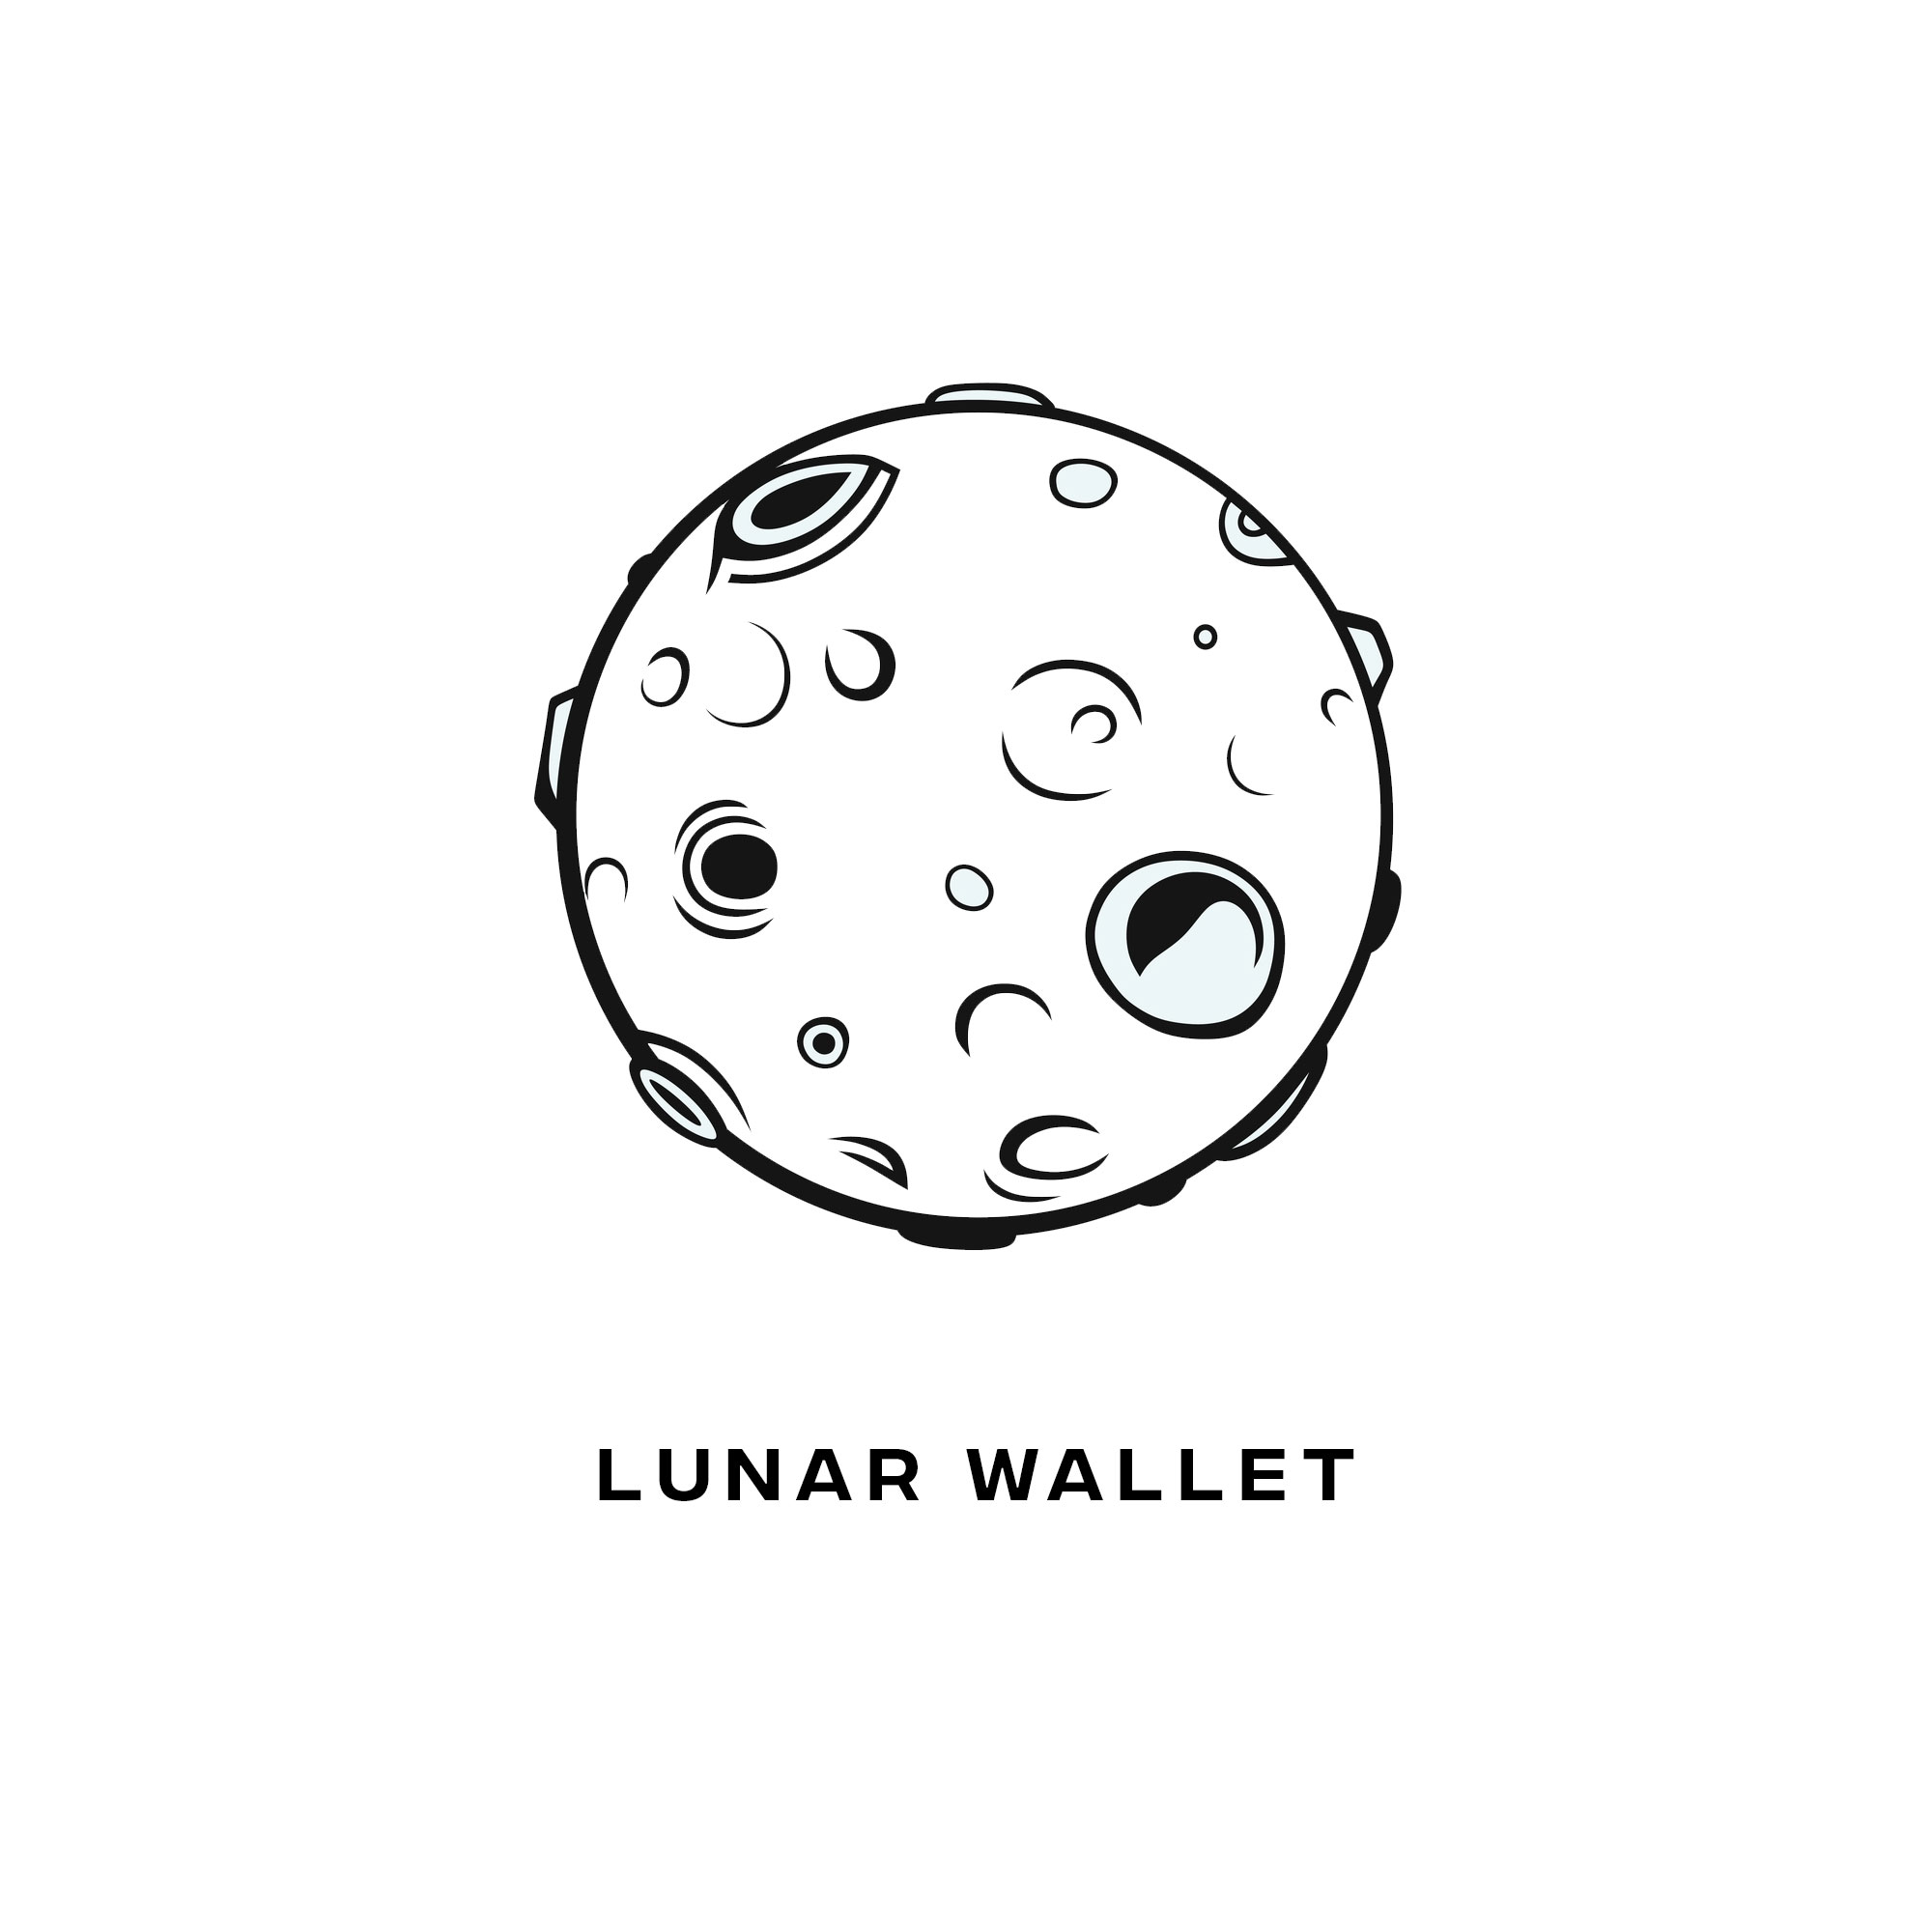 Lunar Wallet